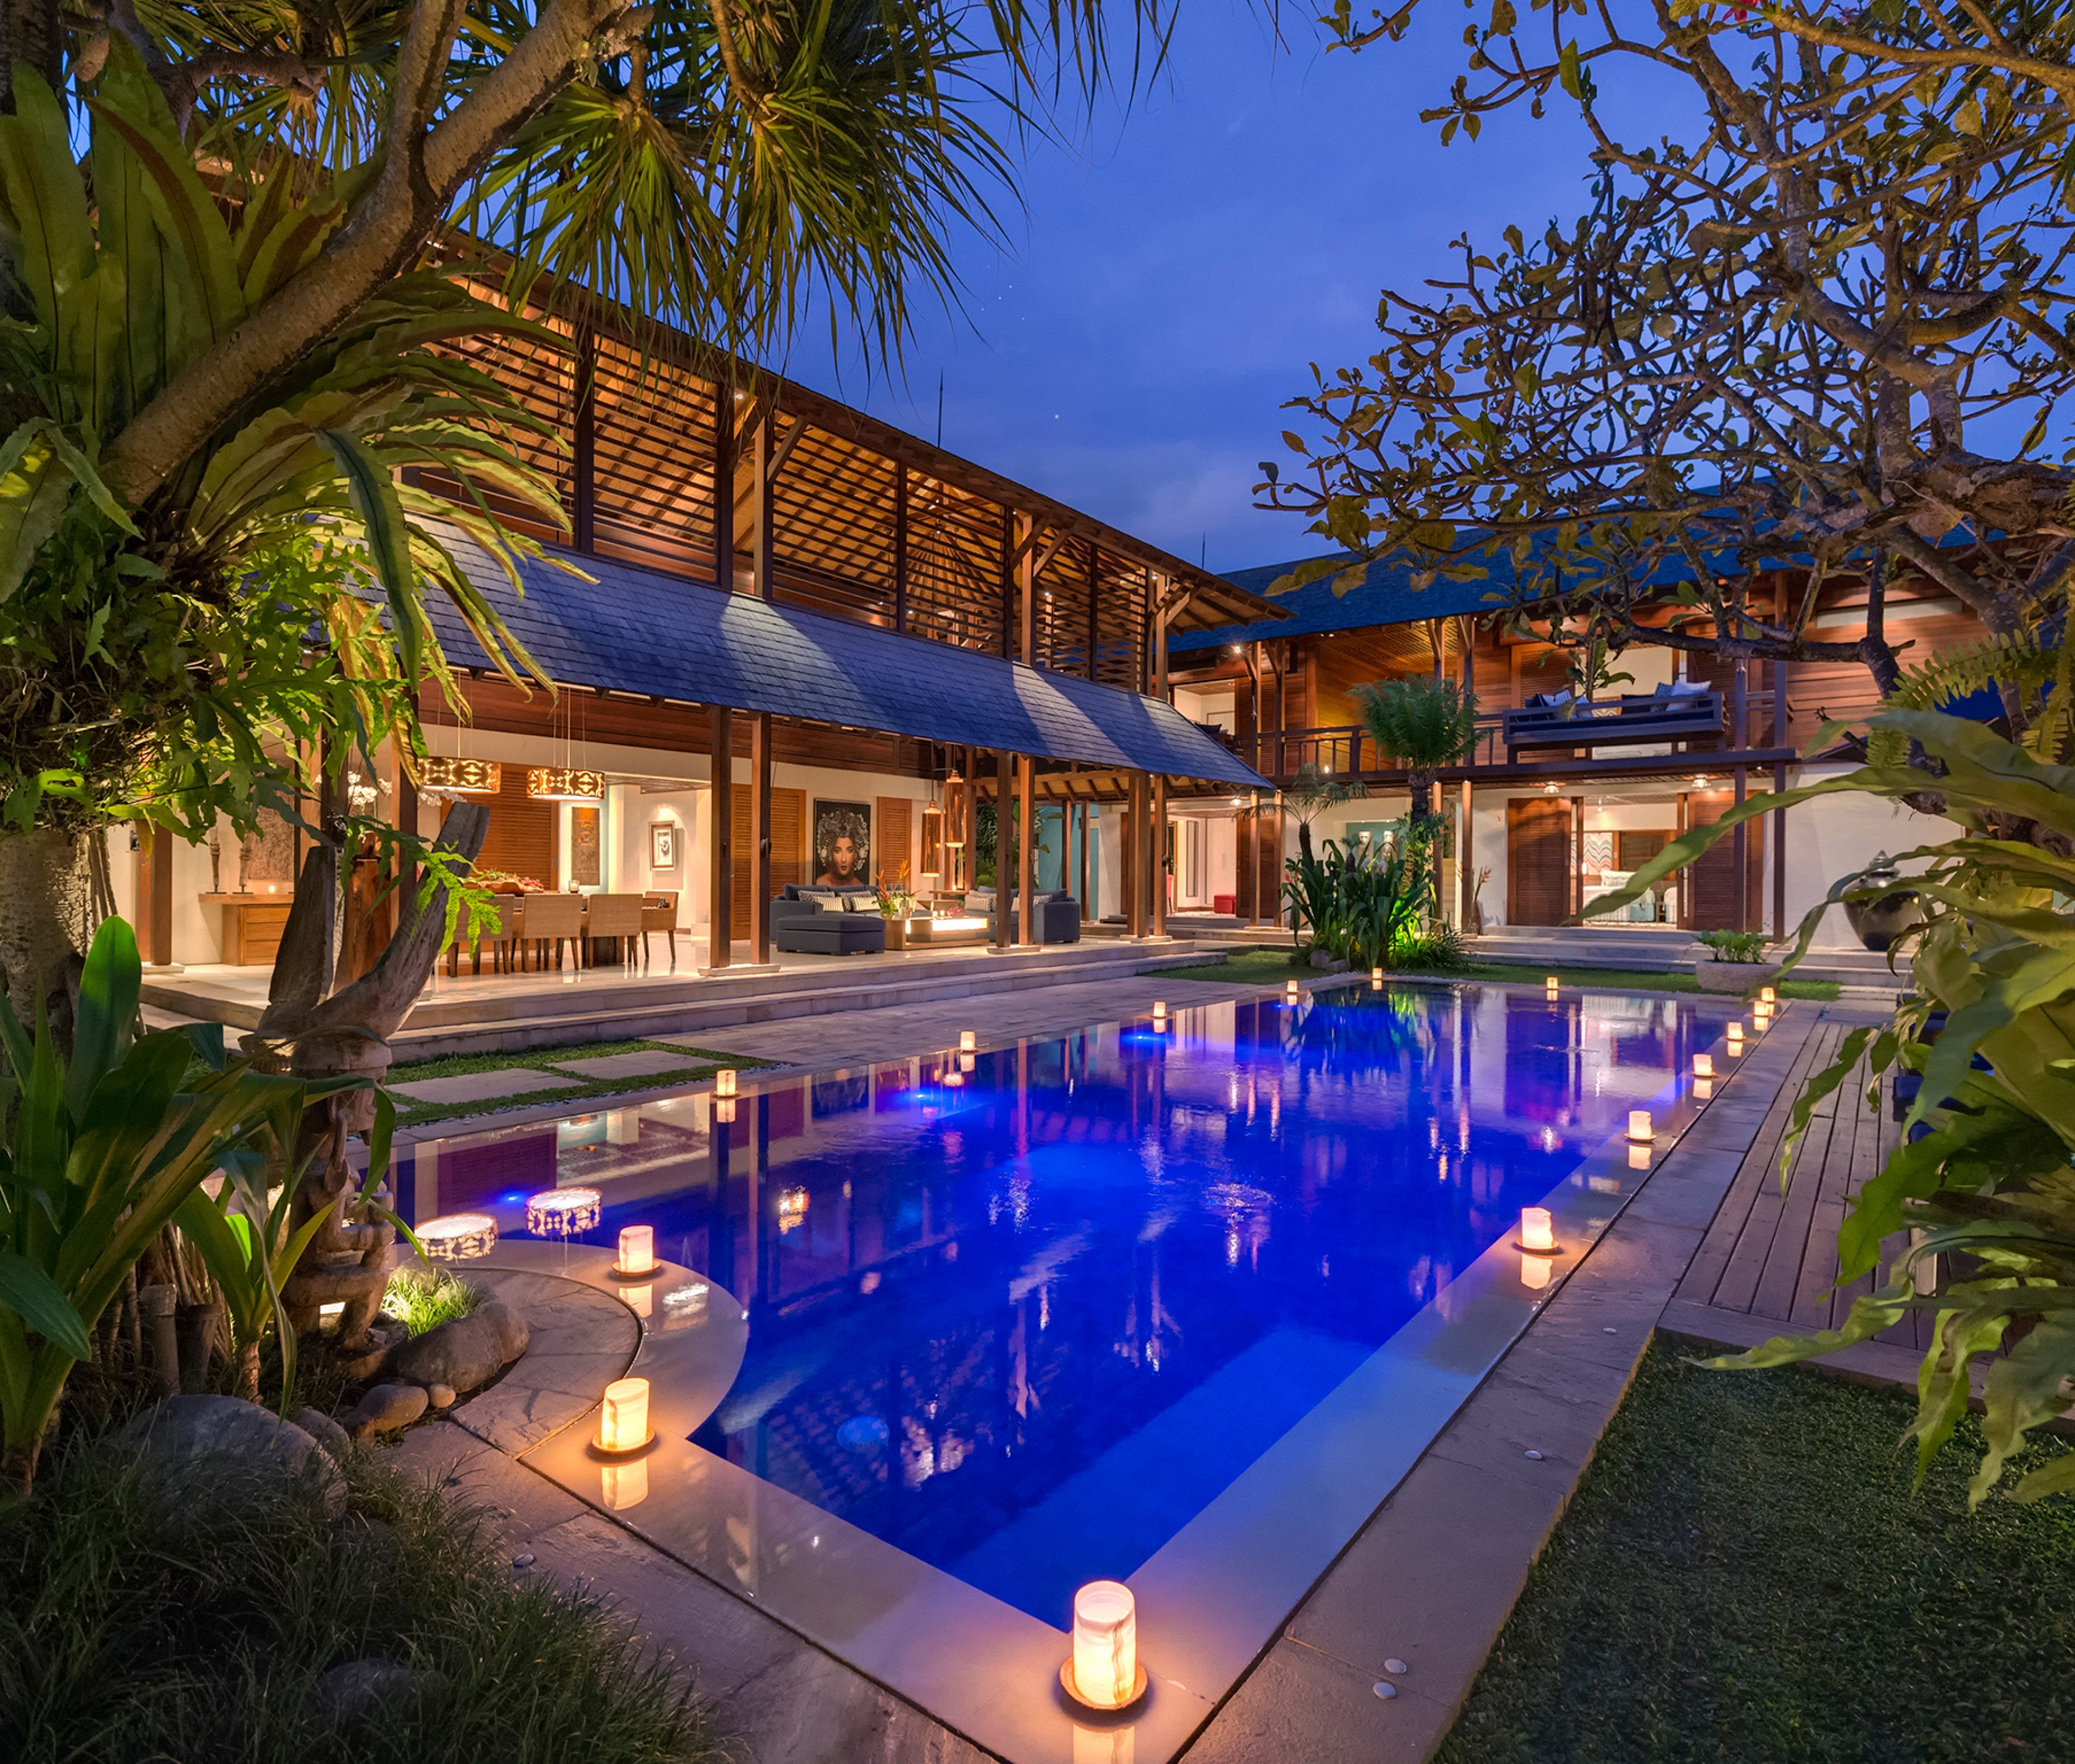 Seminyak 4677 - Villa Windu Sari - Villas in Seminyak, Bali with private pools